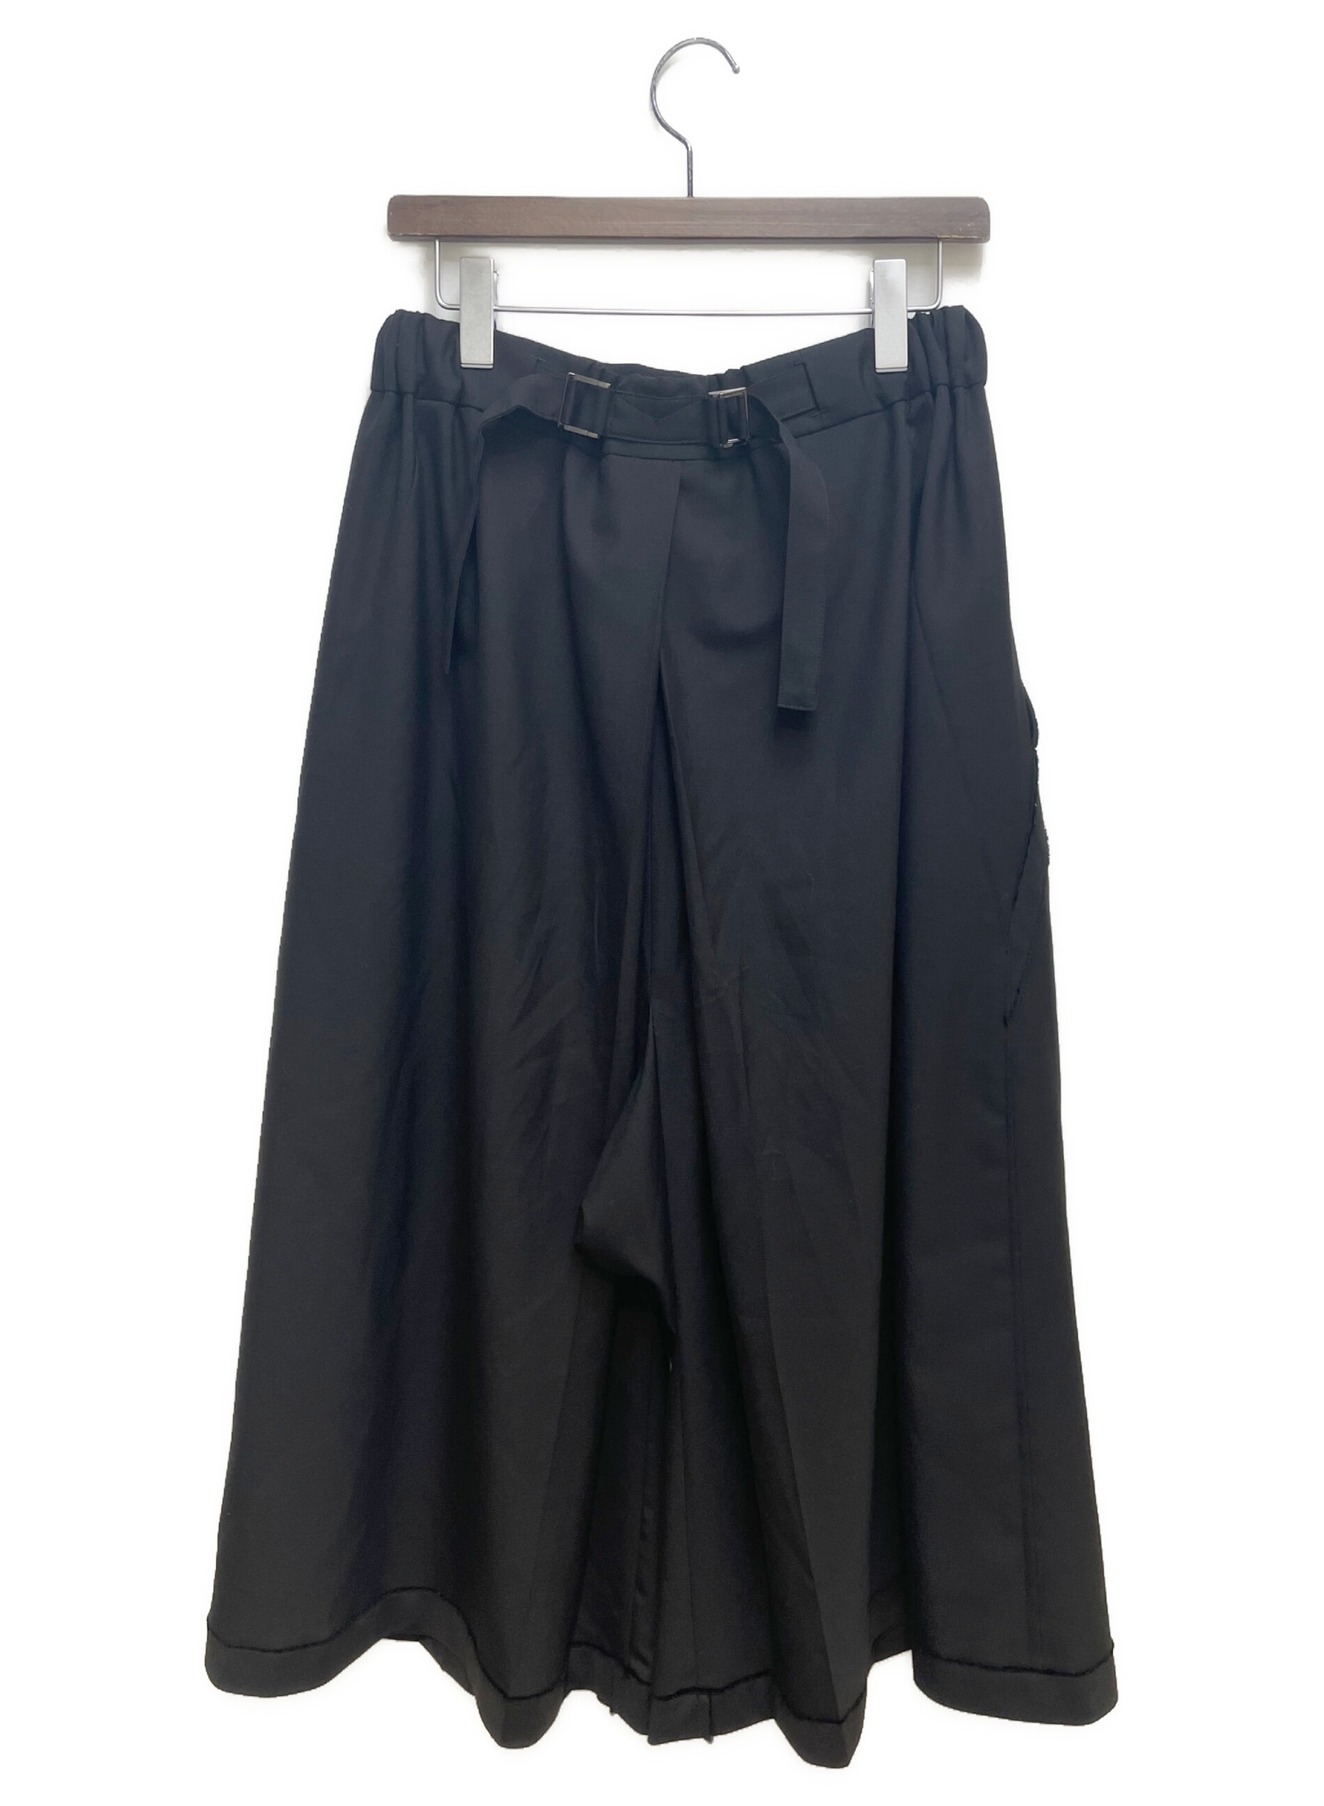 GROUND Y (グラウンドワイ) 21SS 袴パンツ ブラック サイズ:3